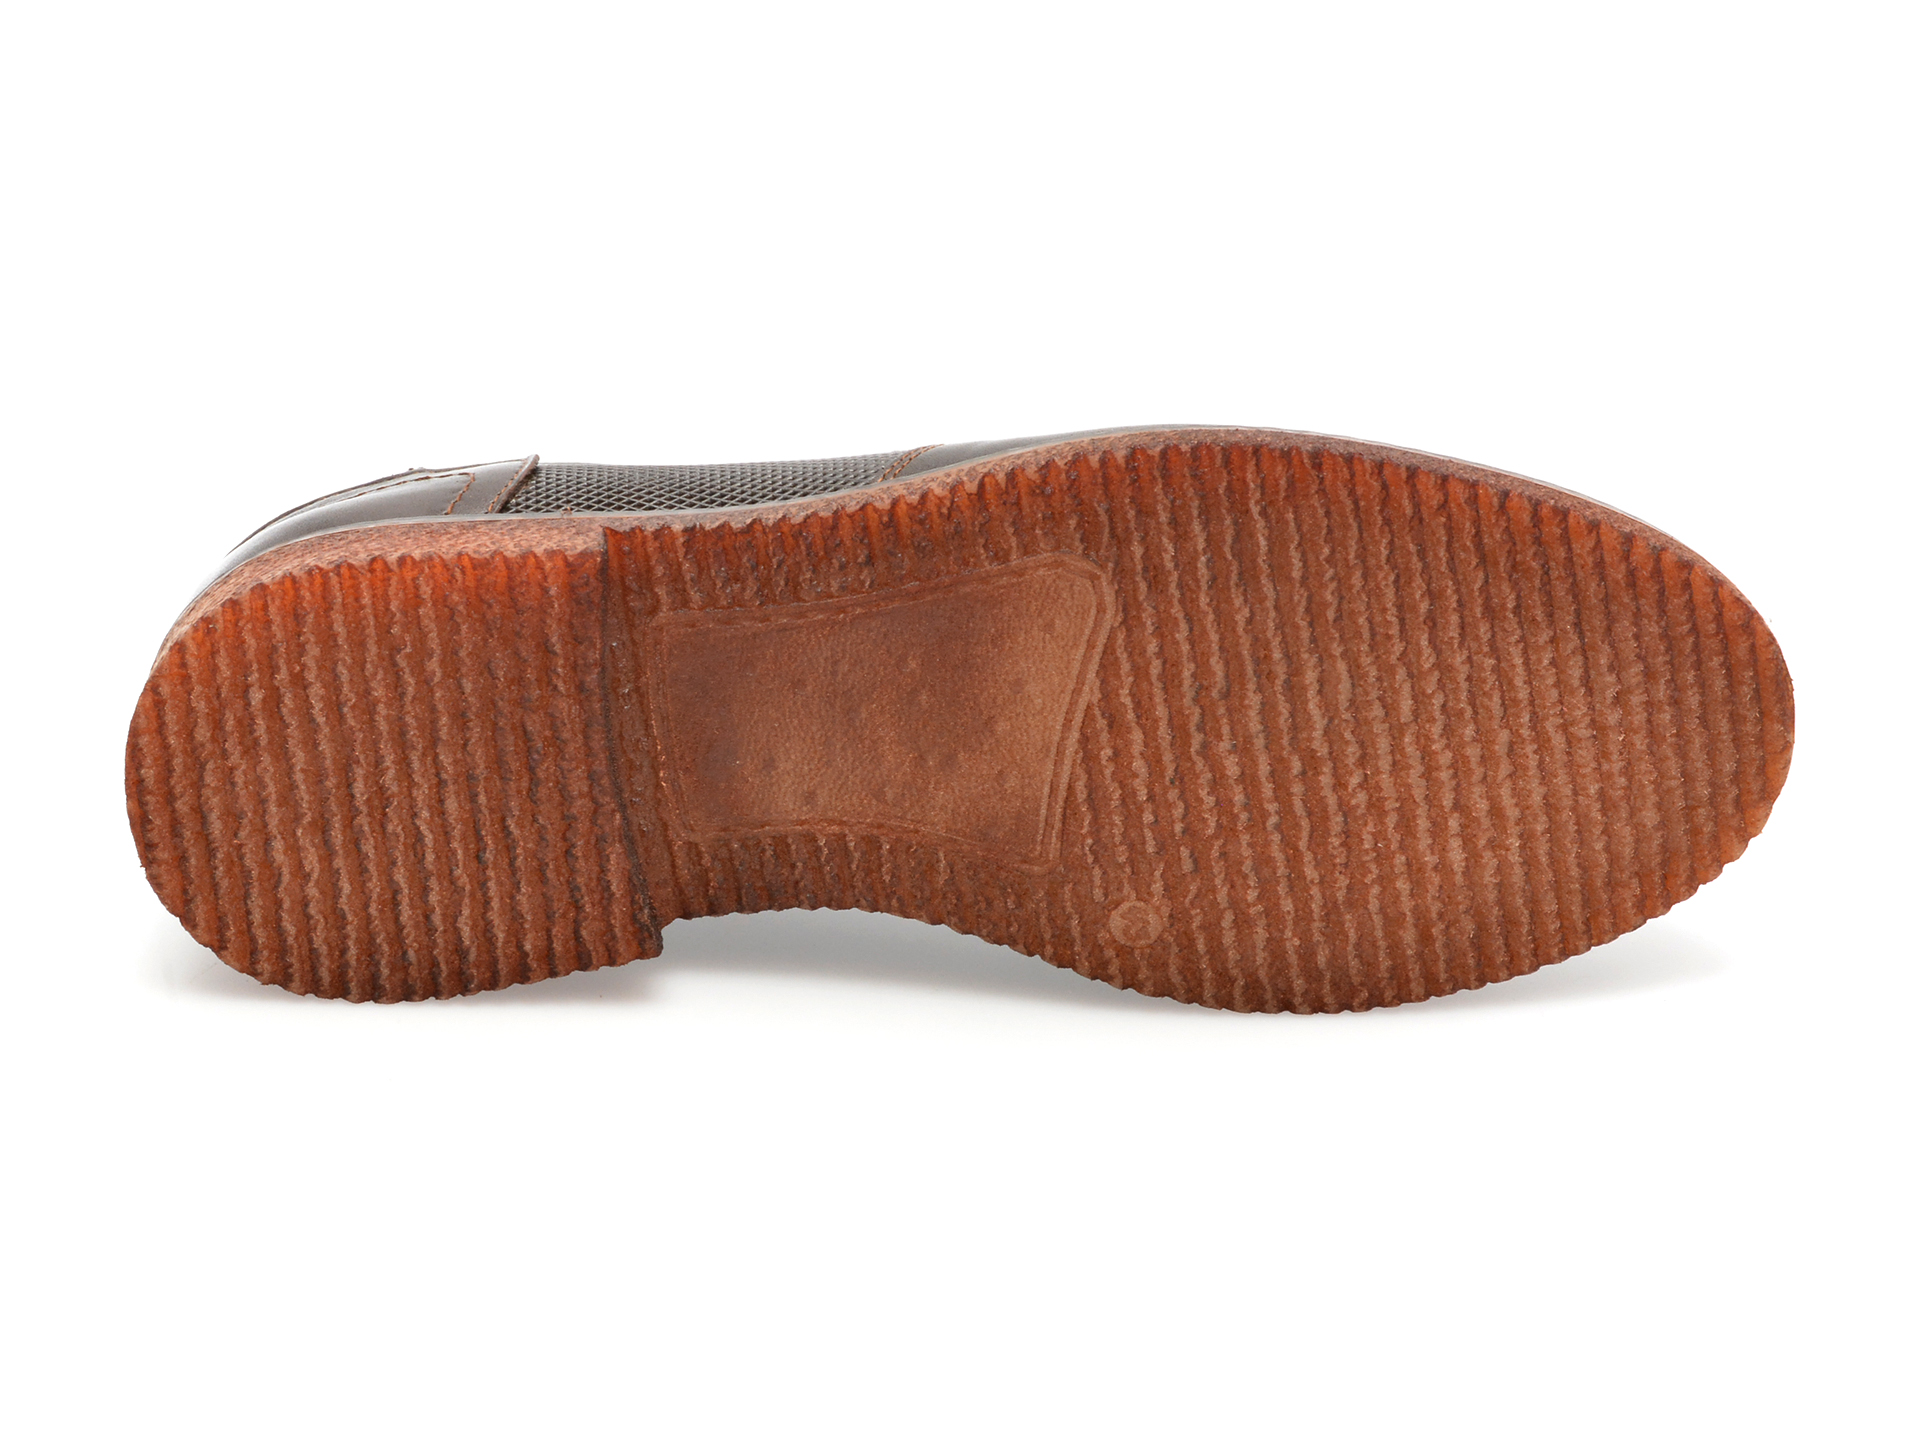 Pantofi OTTER maro, TUR42, din piele naturala